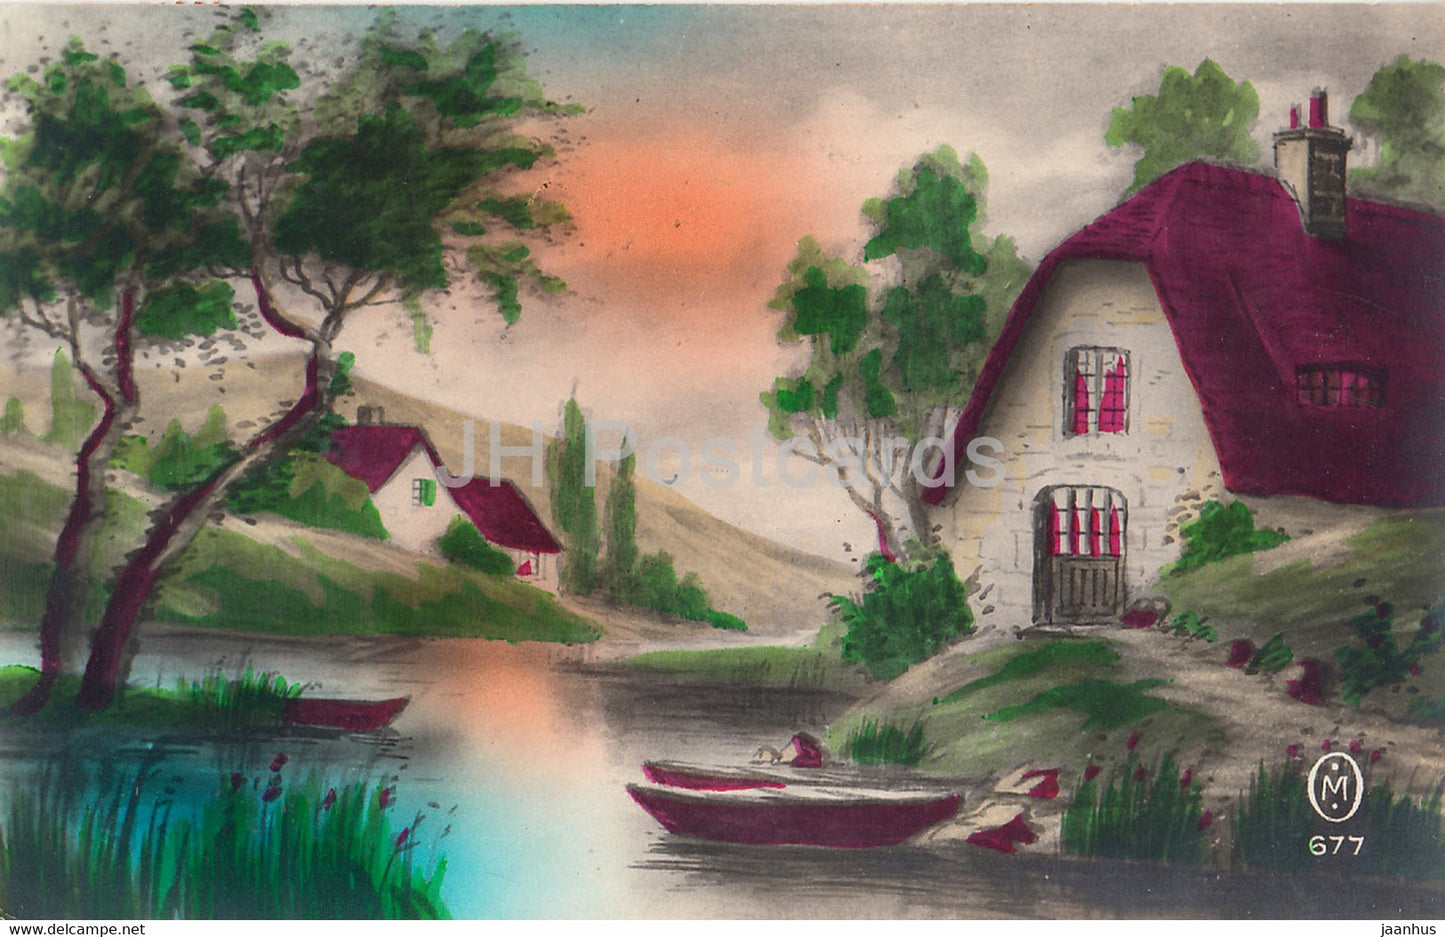 House - Boat - illustration - old postcard - France - used - JH Postcards